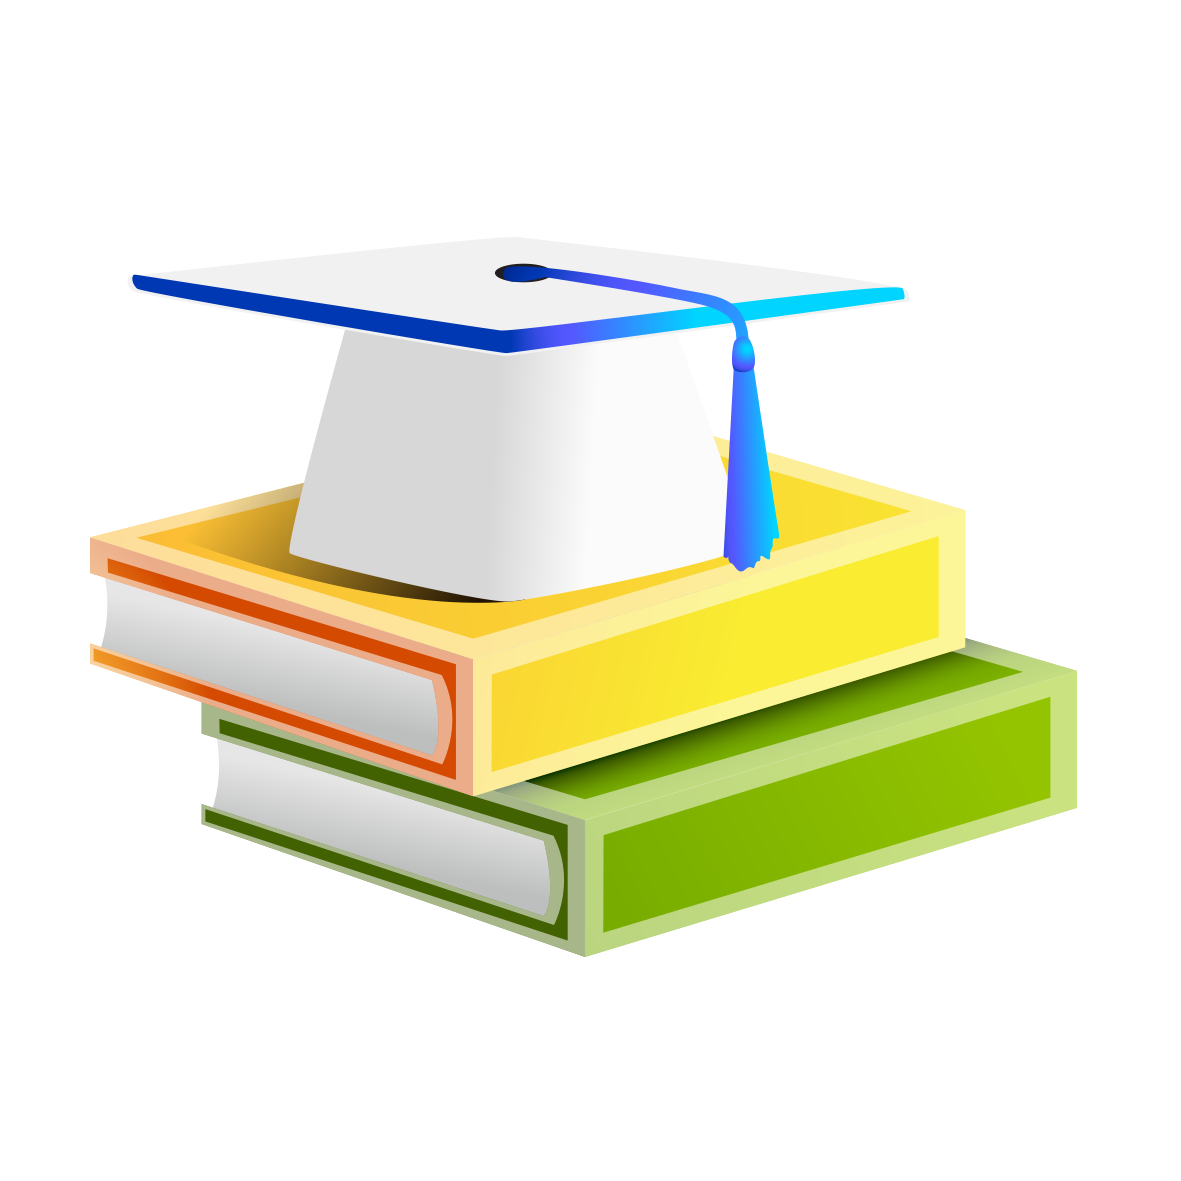 Textbook clipart graduation cap, Textbook graduation cap Transparent ...